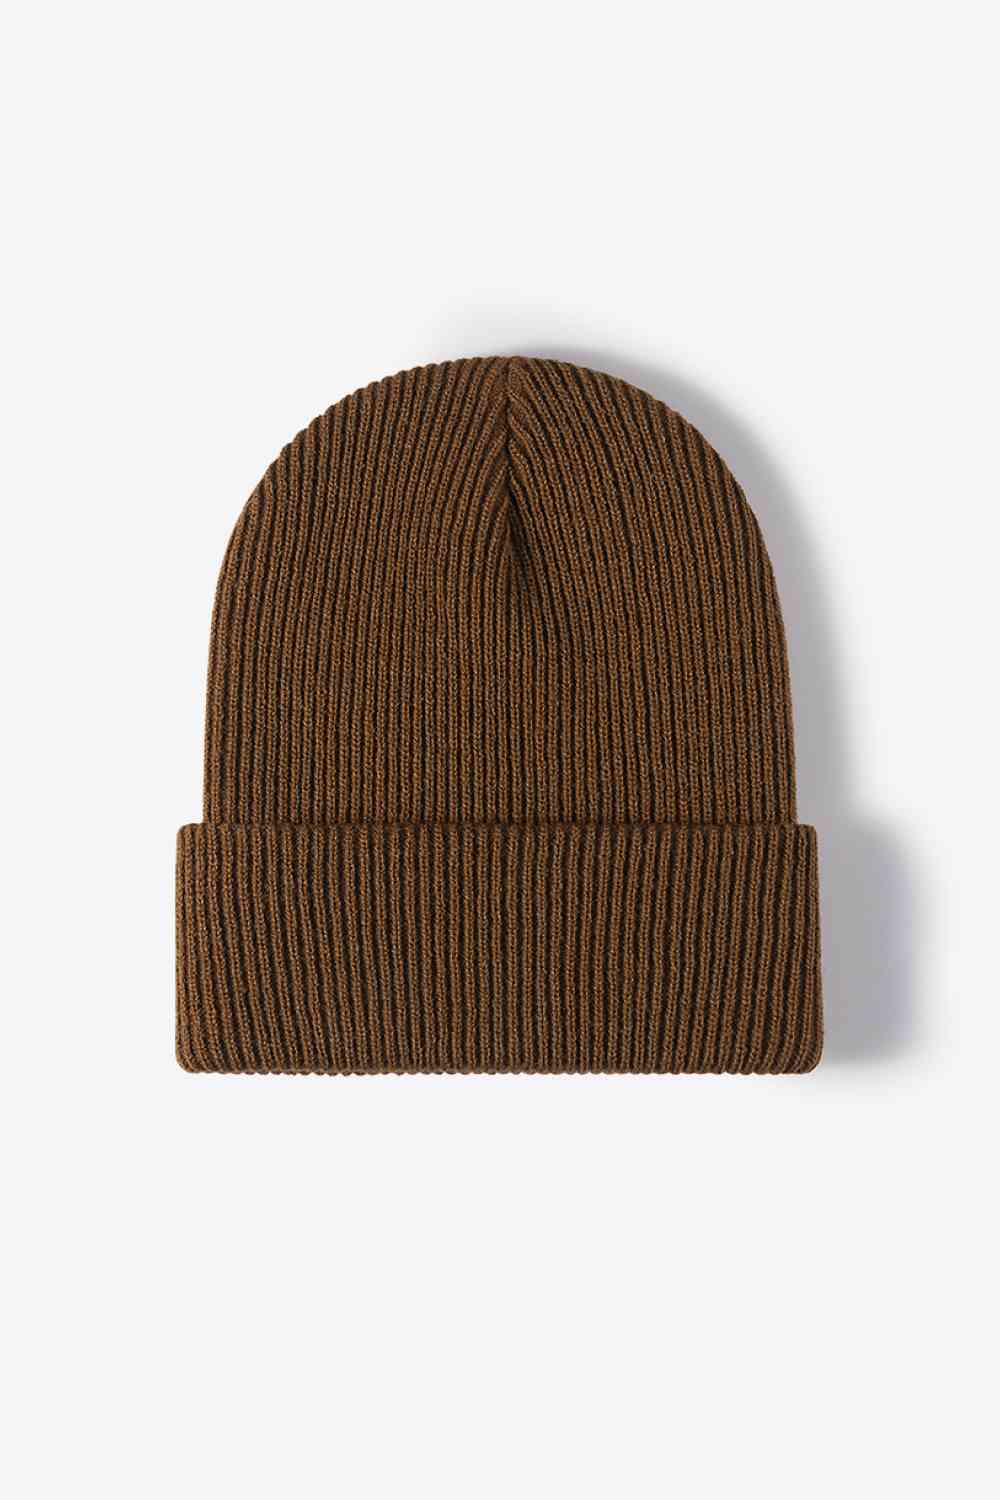 Warm Winter Knit Beanie Hat +